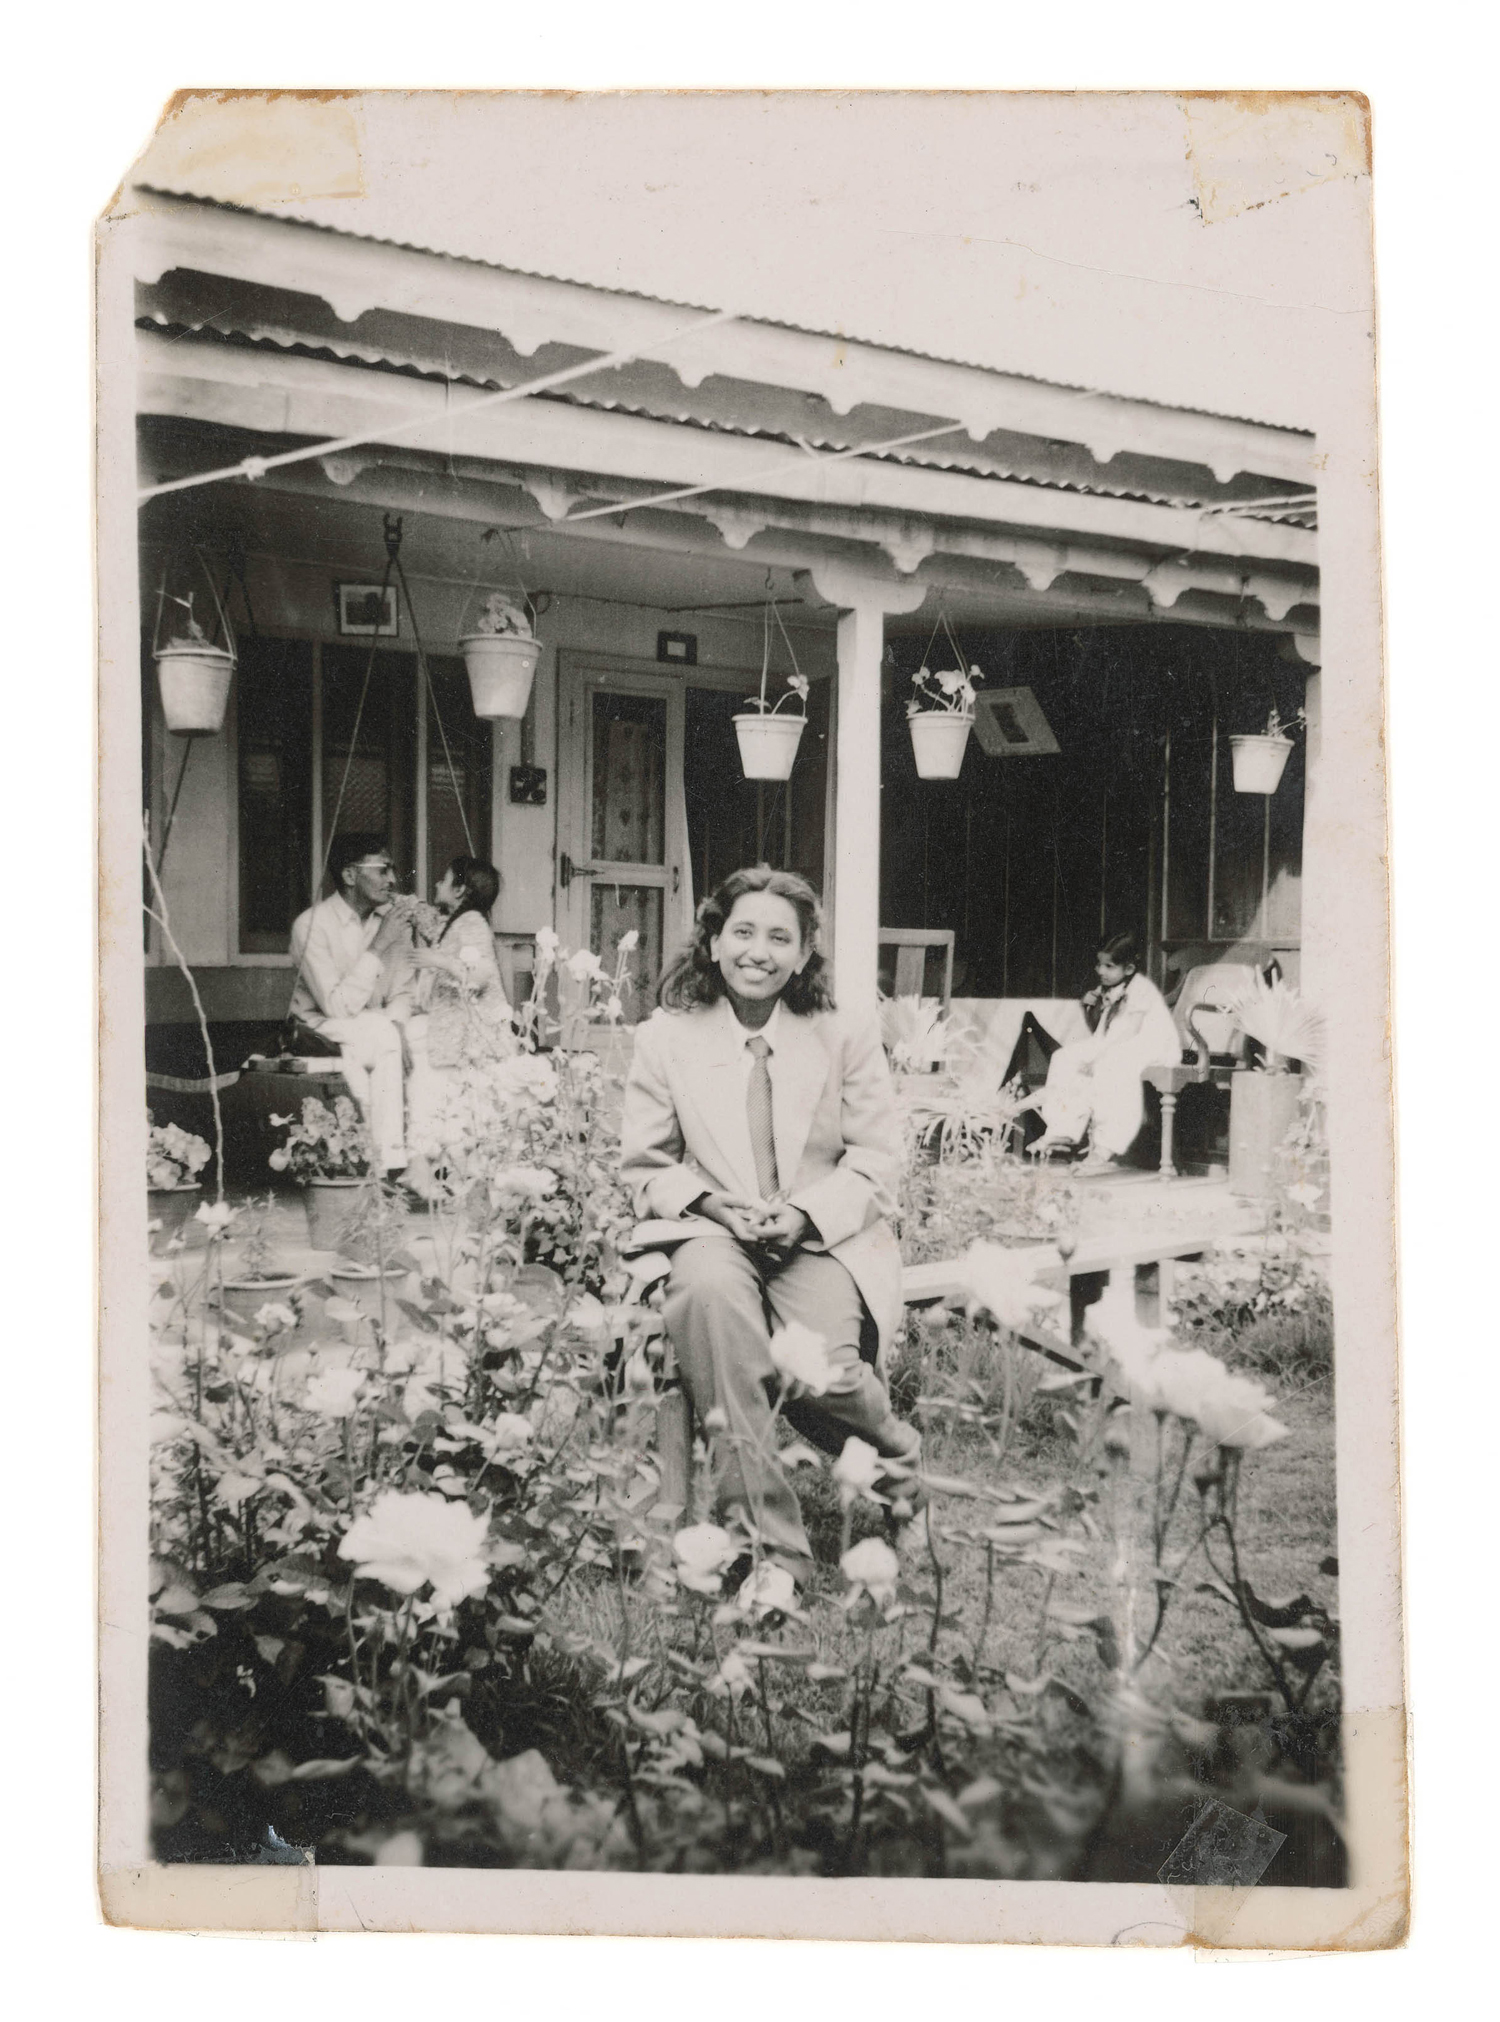   Nani in the Garden, 1948.   